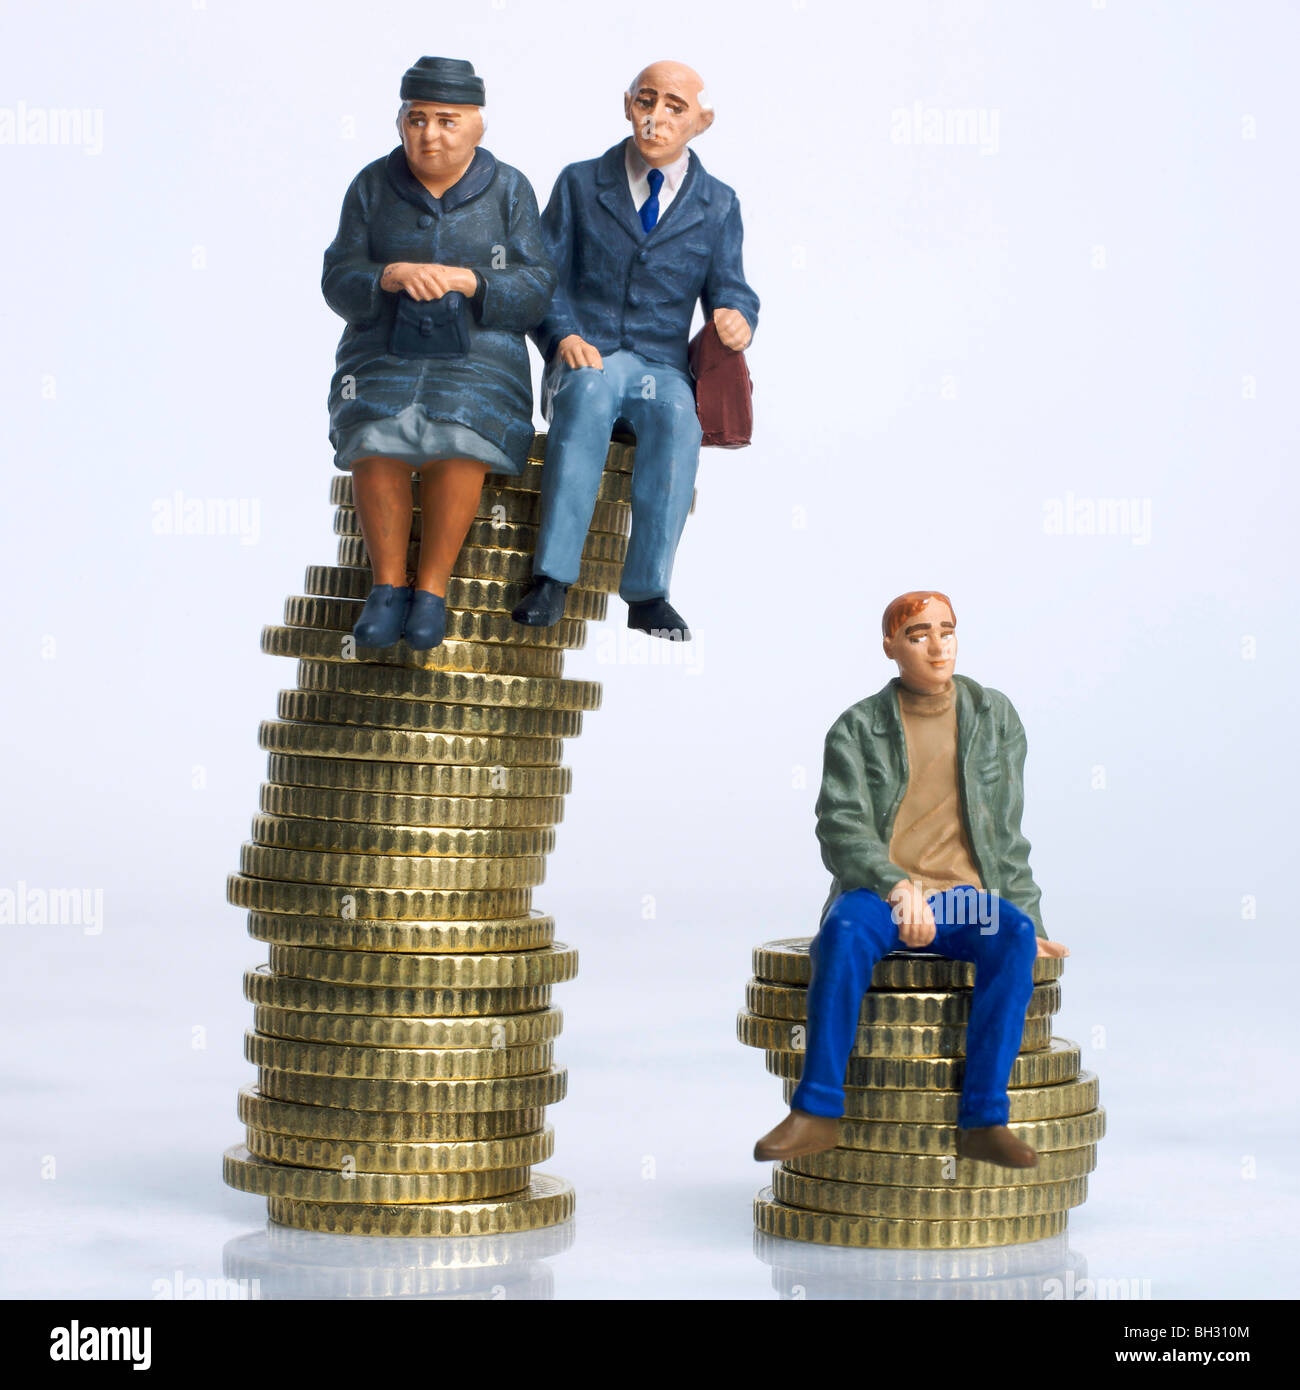 Viejos y jóvenes figuras sentadas en monedas - herencia / disparidad en los ahorros de pensiones / dinero / antiguo v concepto de ingreso jóvenes Foto de stock